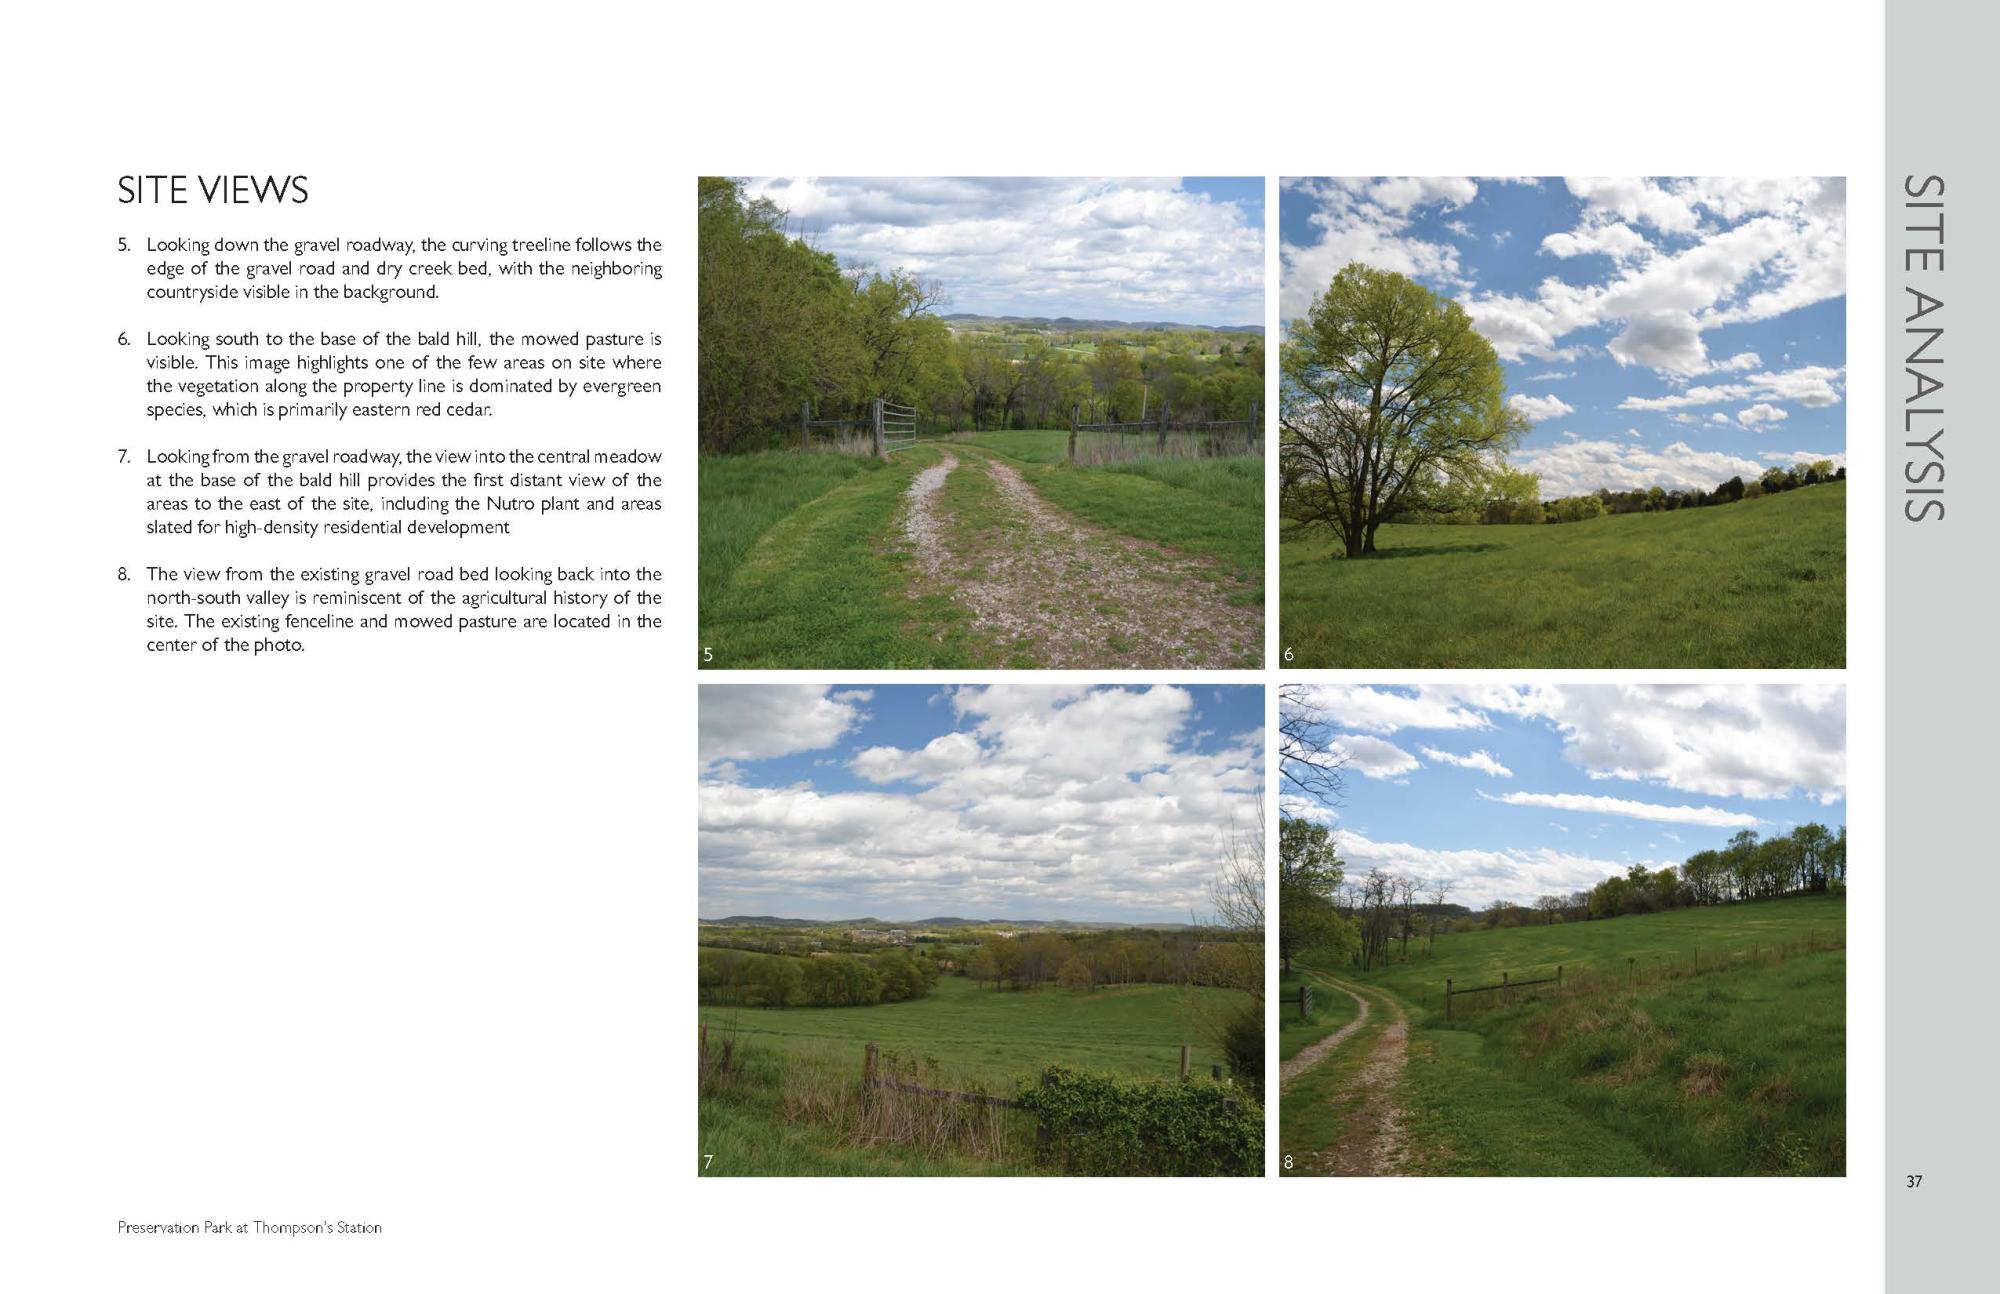 Preservation park master plan_Page_37